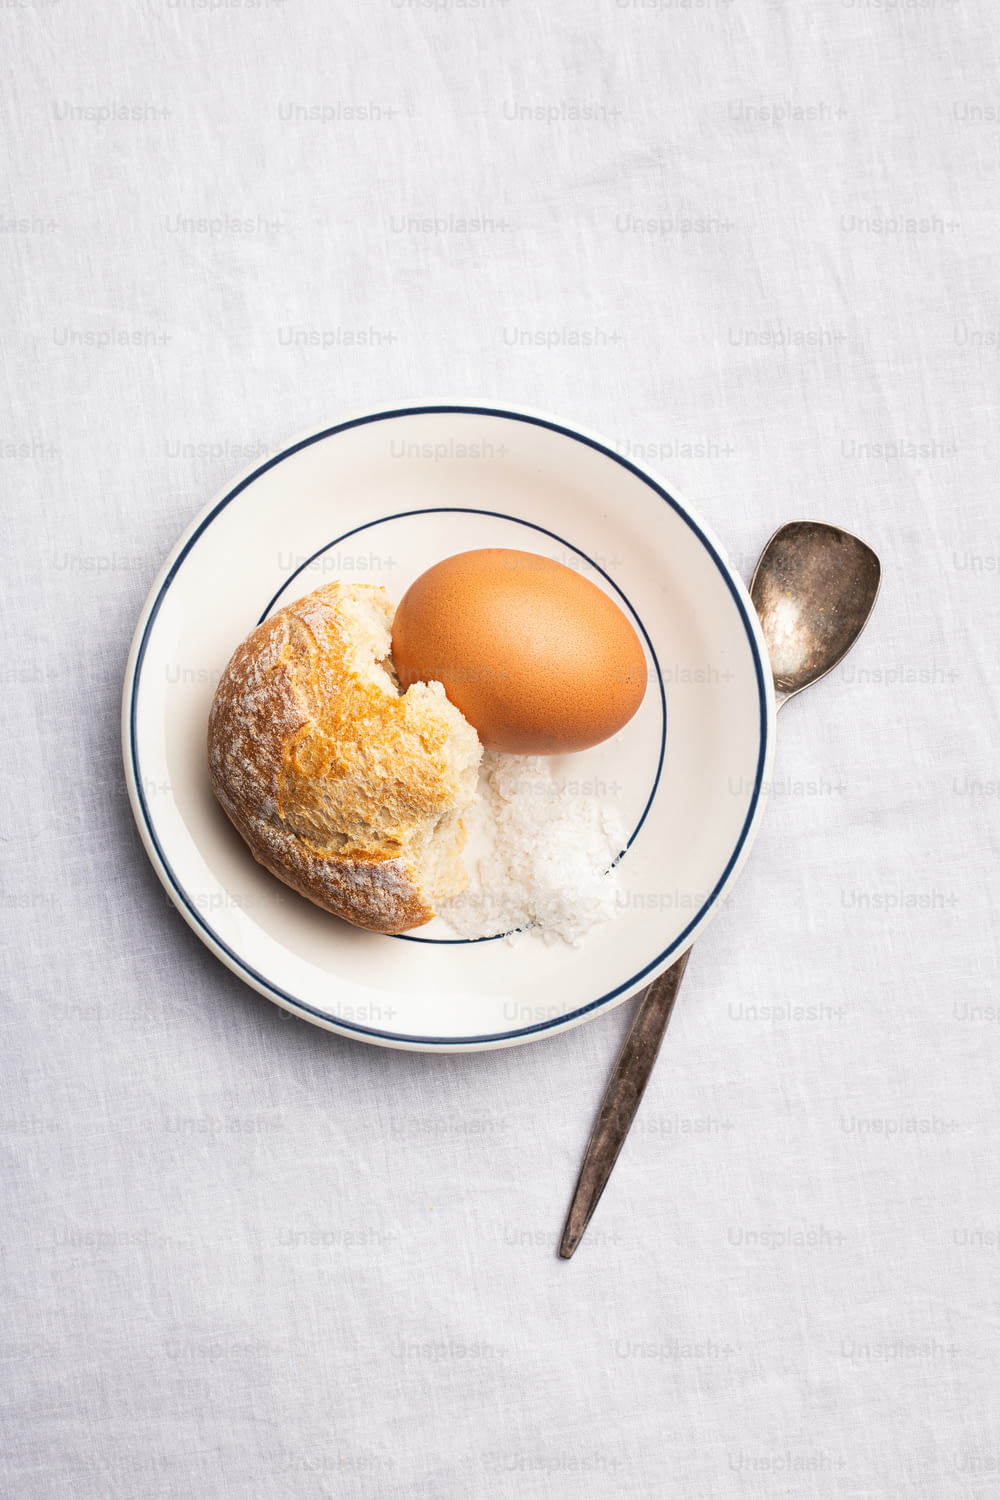 빵 한 조각과 달걀을 얹은 흰 접시